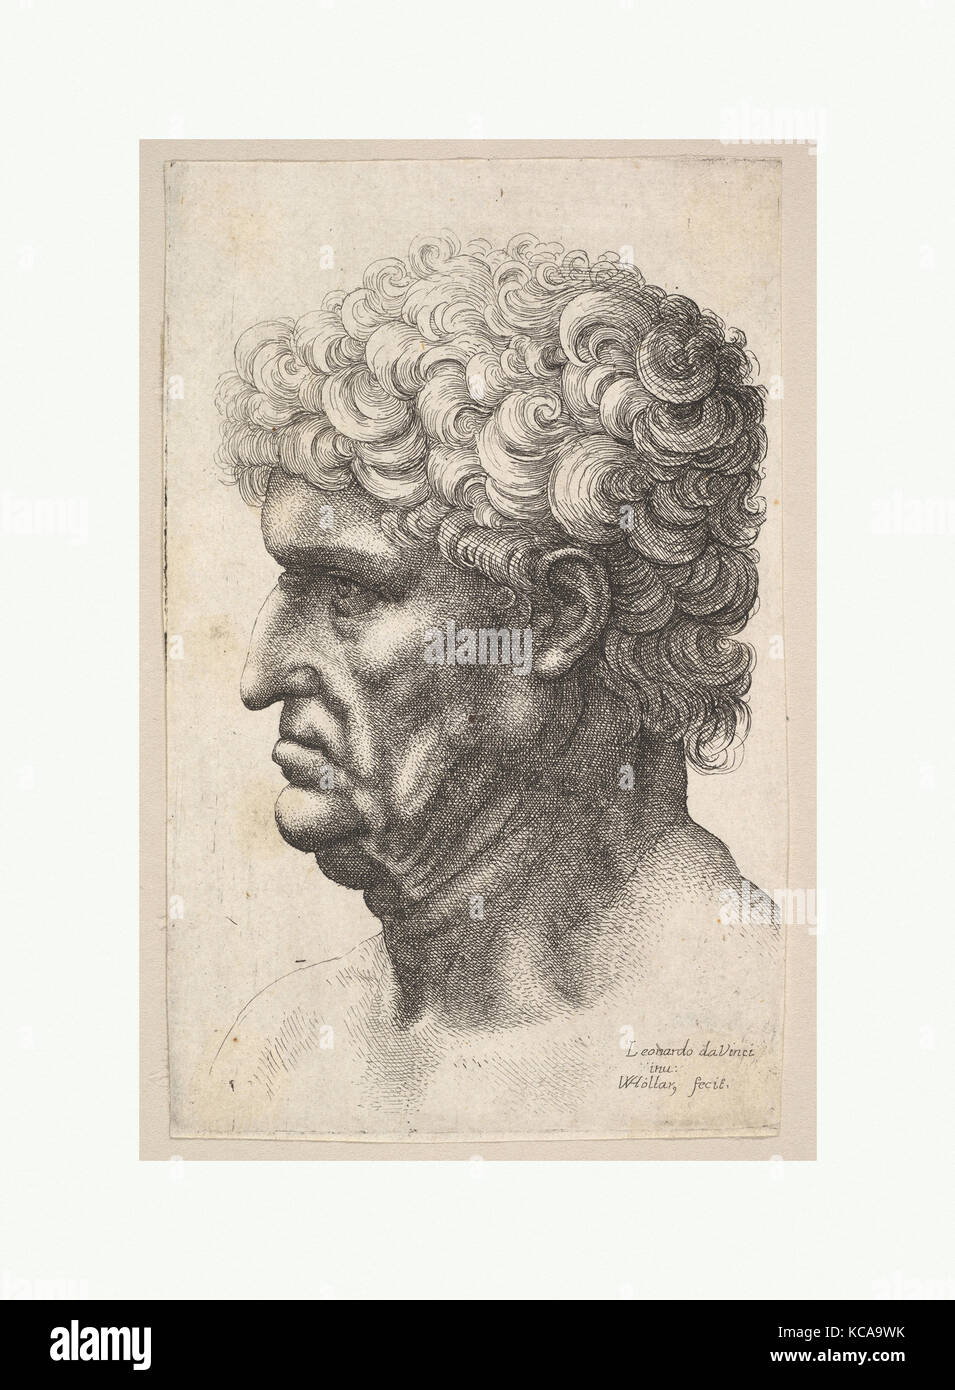 Kopf von einem Mann mit dicken lockigen Haar im Profil auf der linken Seite, nach Leonardo da Vinci, 1640 - 49 Stockfoto